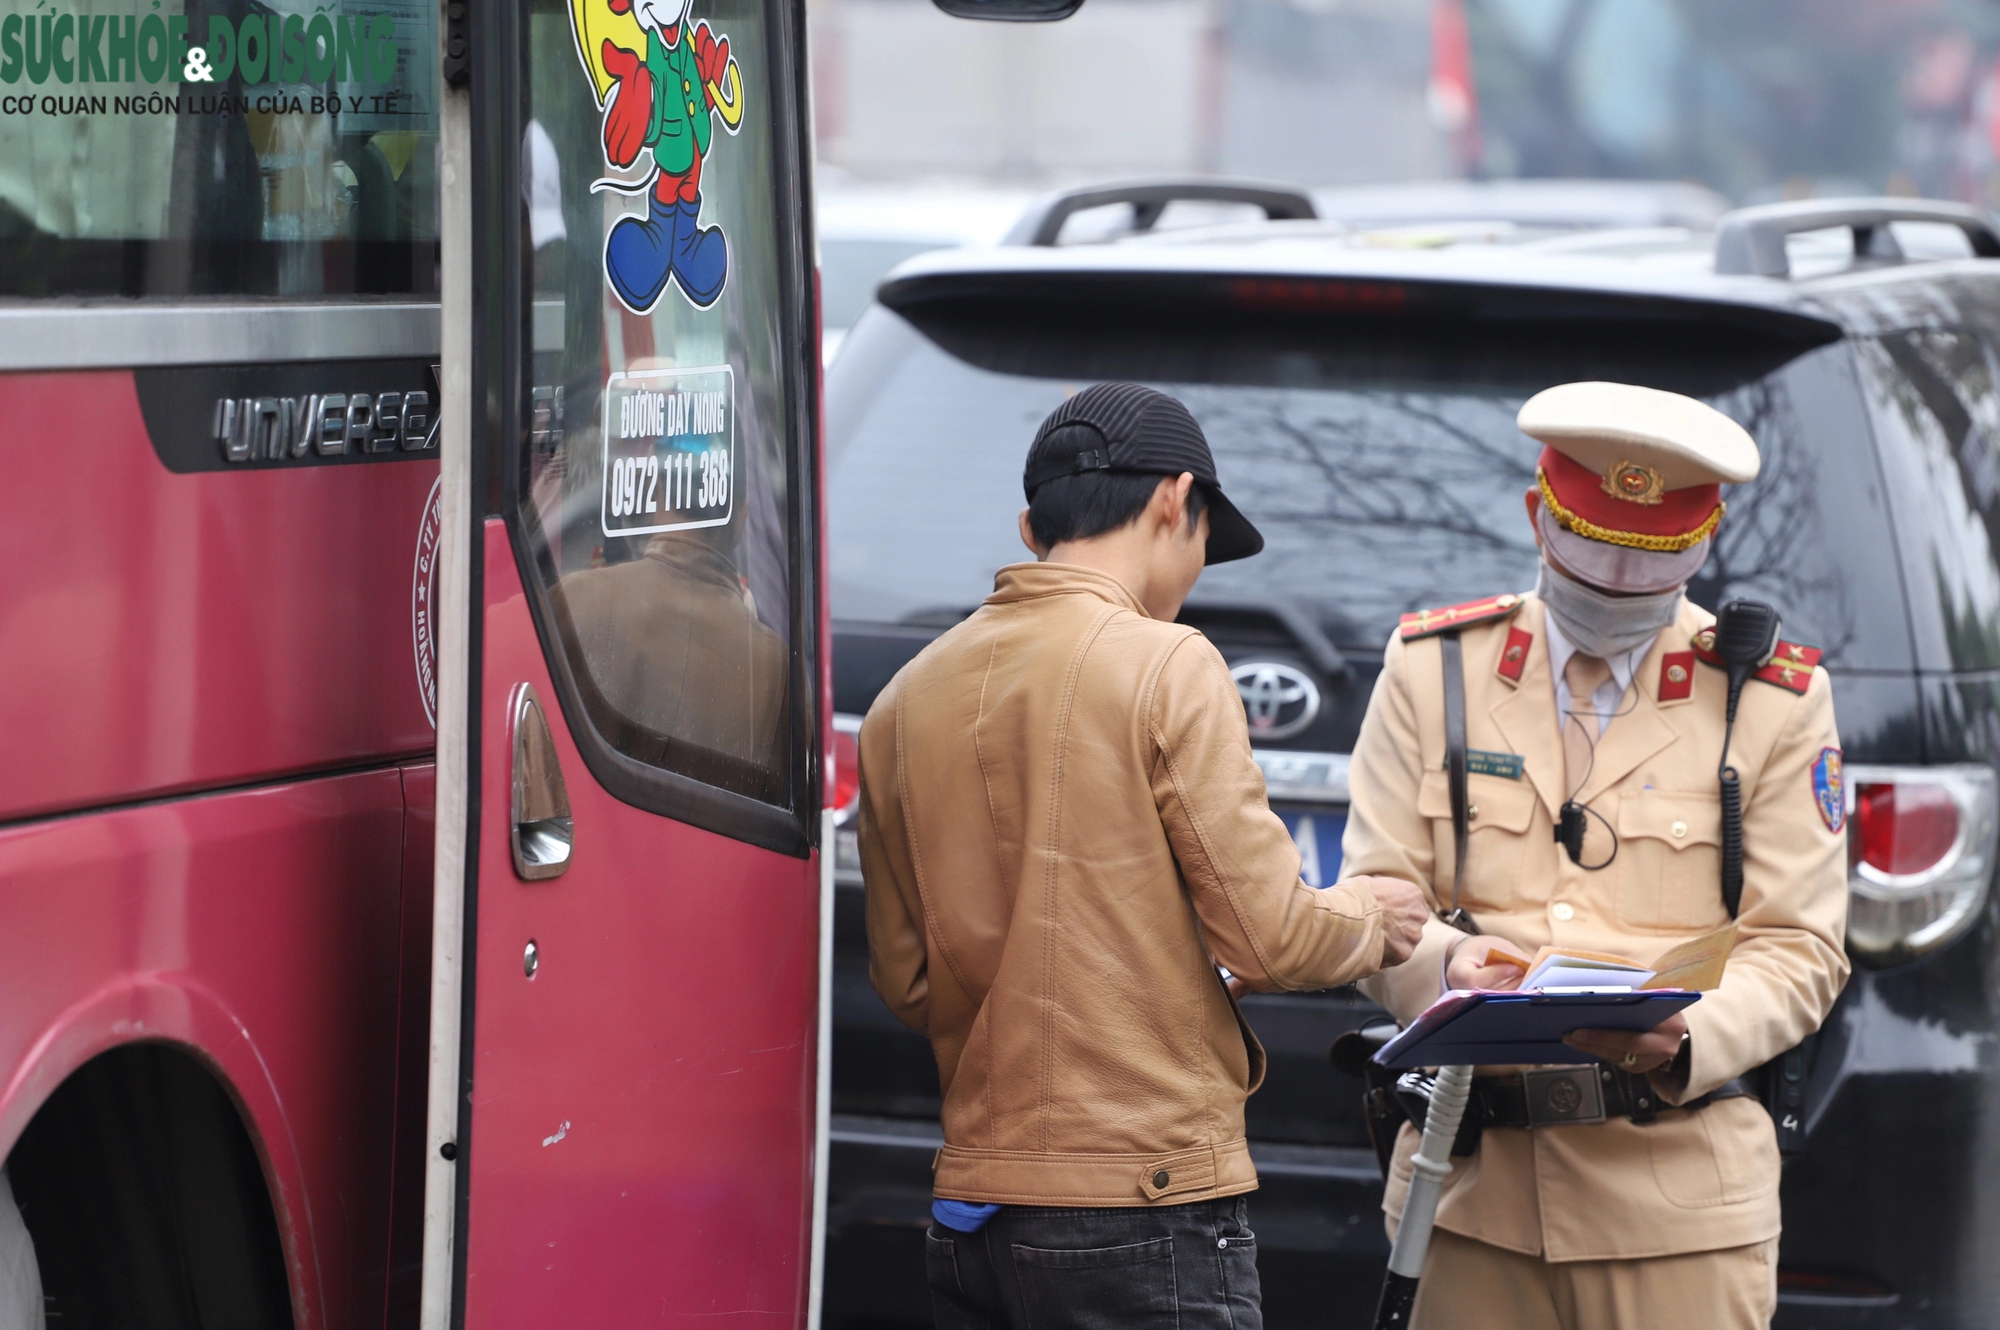 'Khám' xe khách dịp cận Tết, phát hiện tài xế chở cả xe máy trong khoang chở người- Ảnh 7.